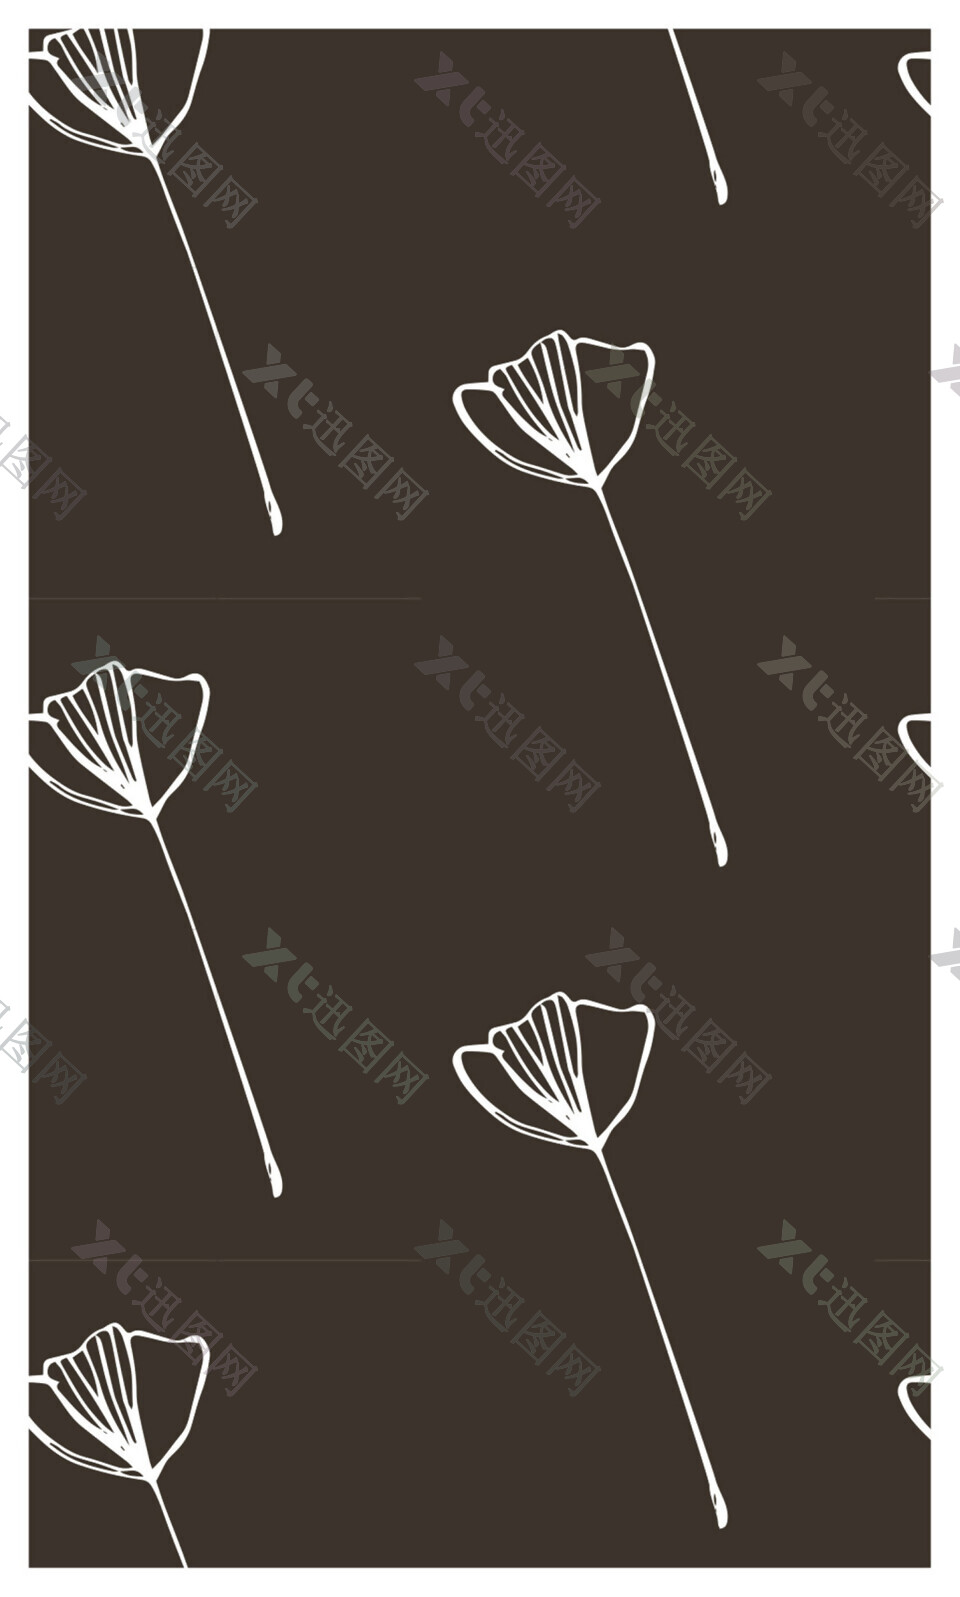 黑白花朵无缝背景图